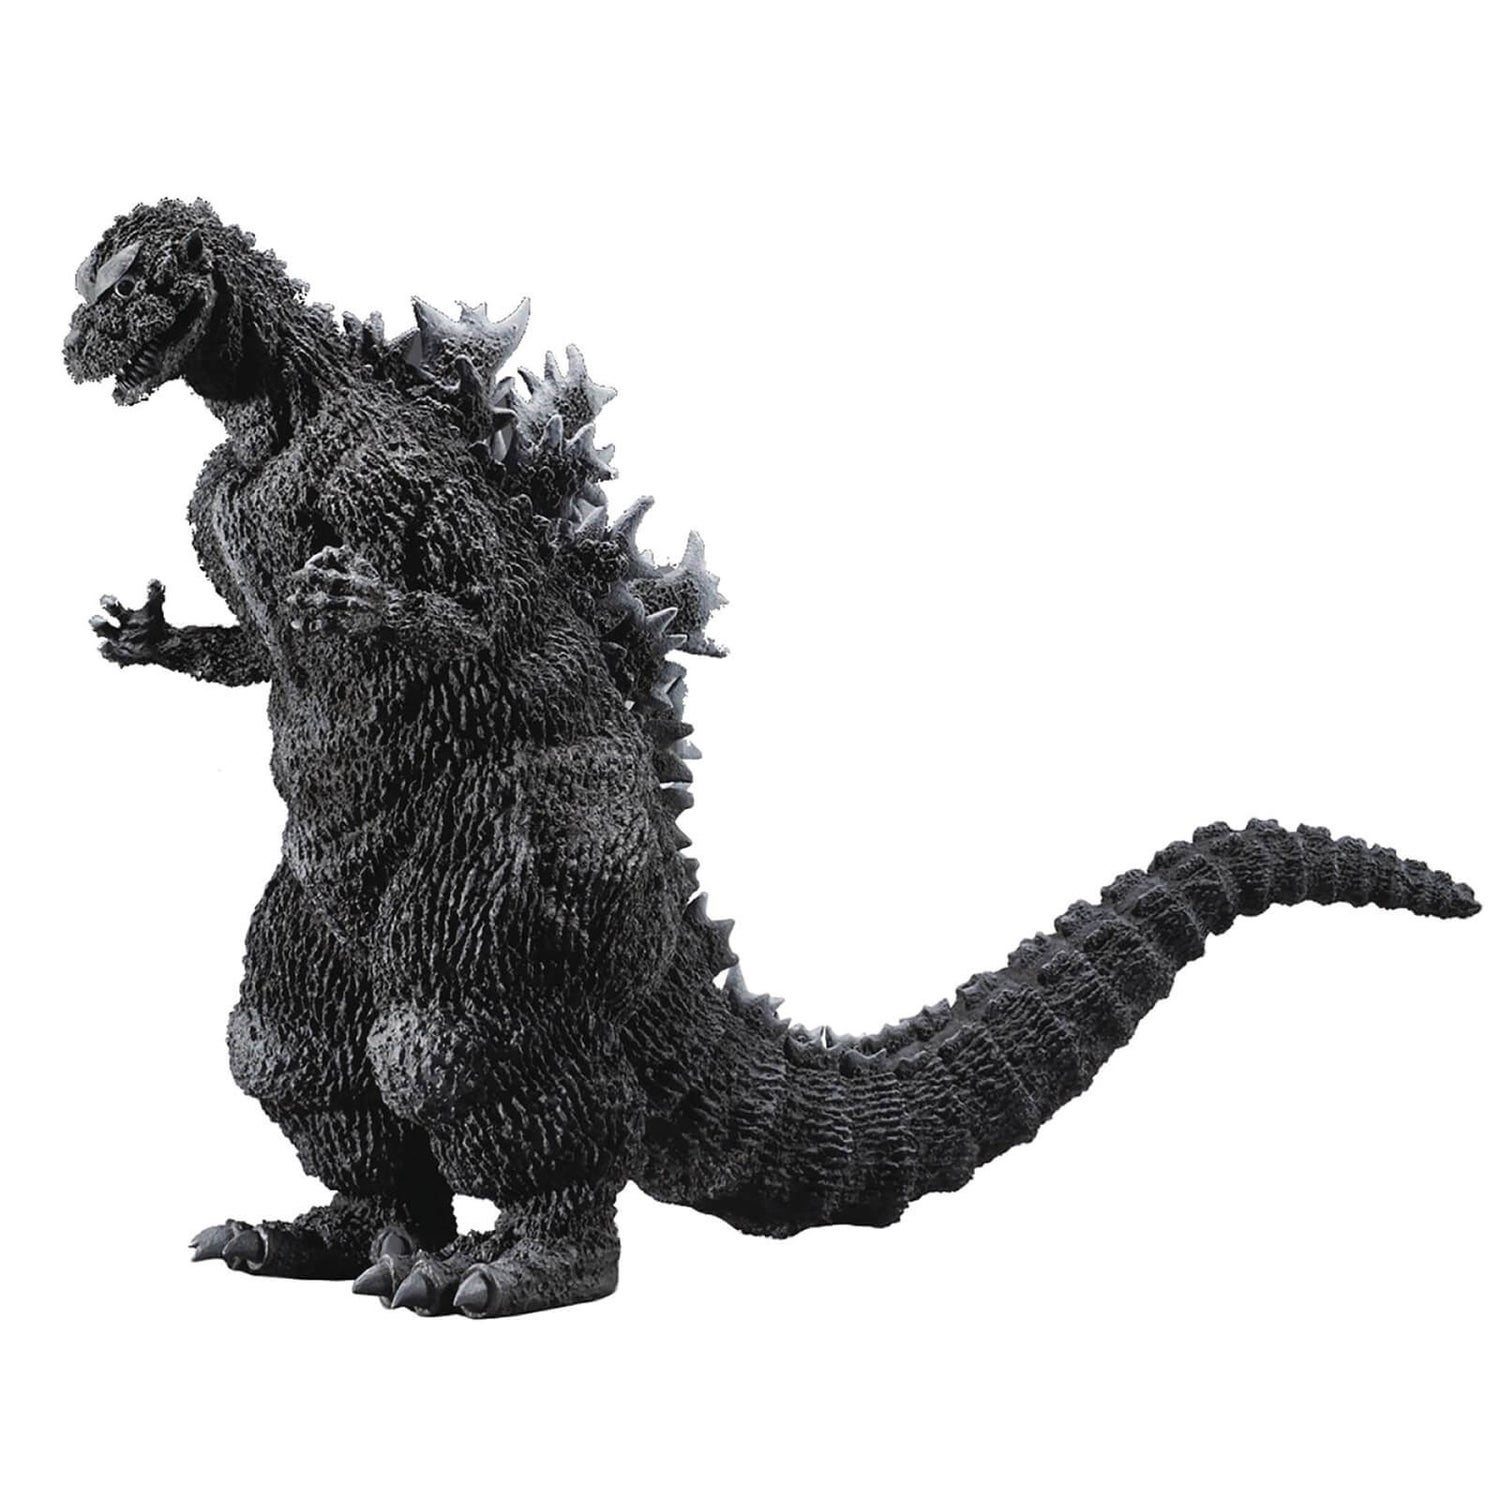 X-Plus Gigantische Serie Godzilla - Godzilla (1954) (Lieblingsbildhauer-Version)